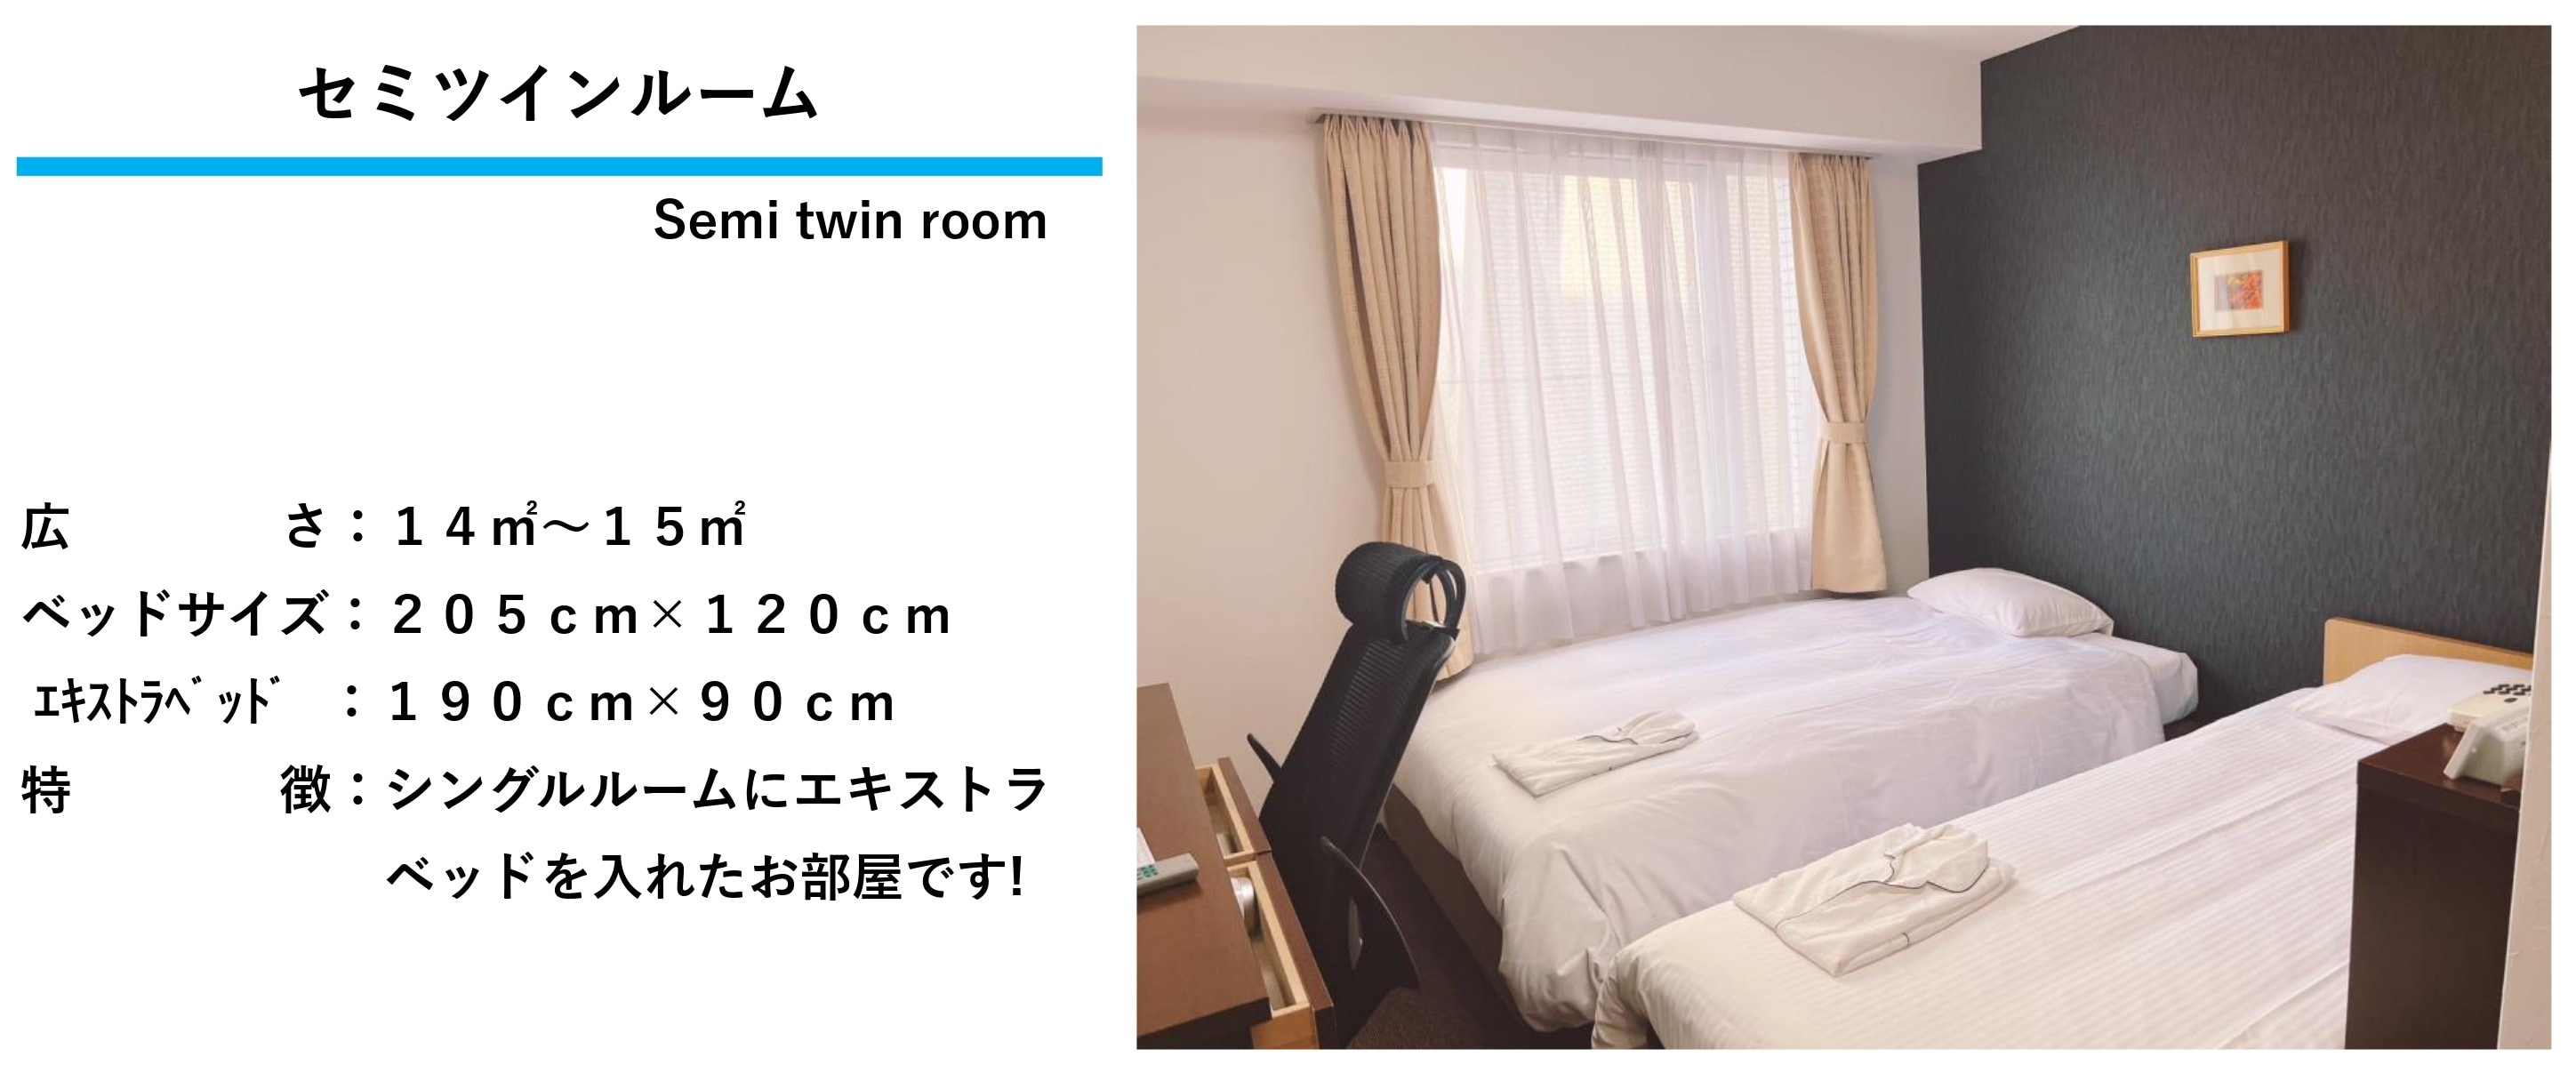 Semi-twin room description